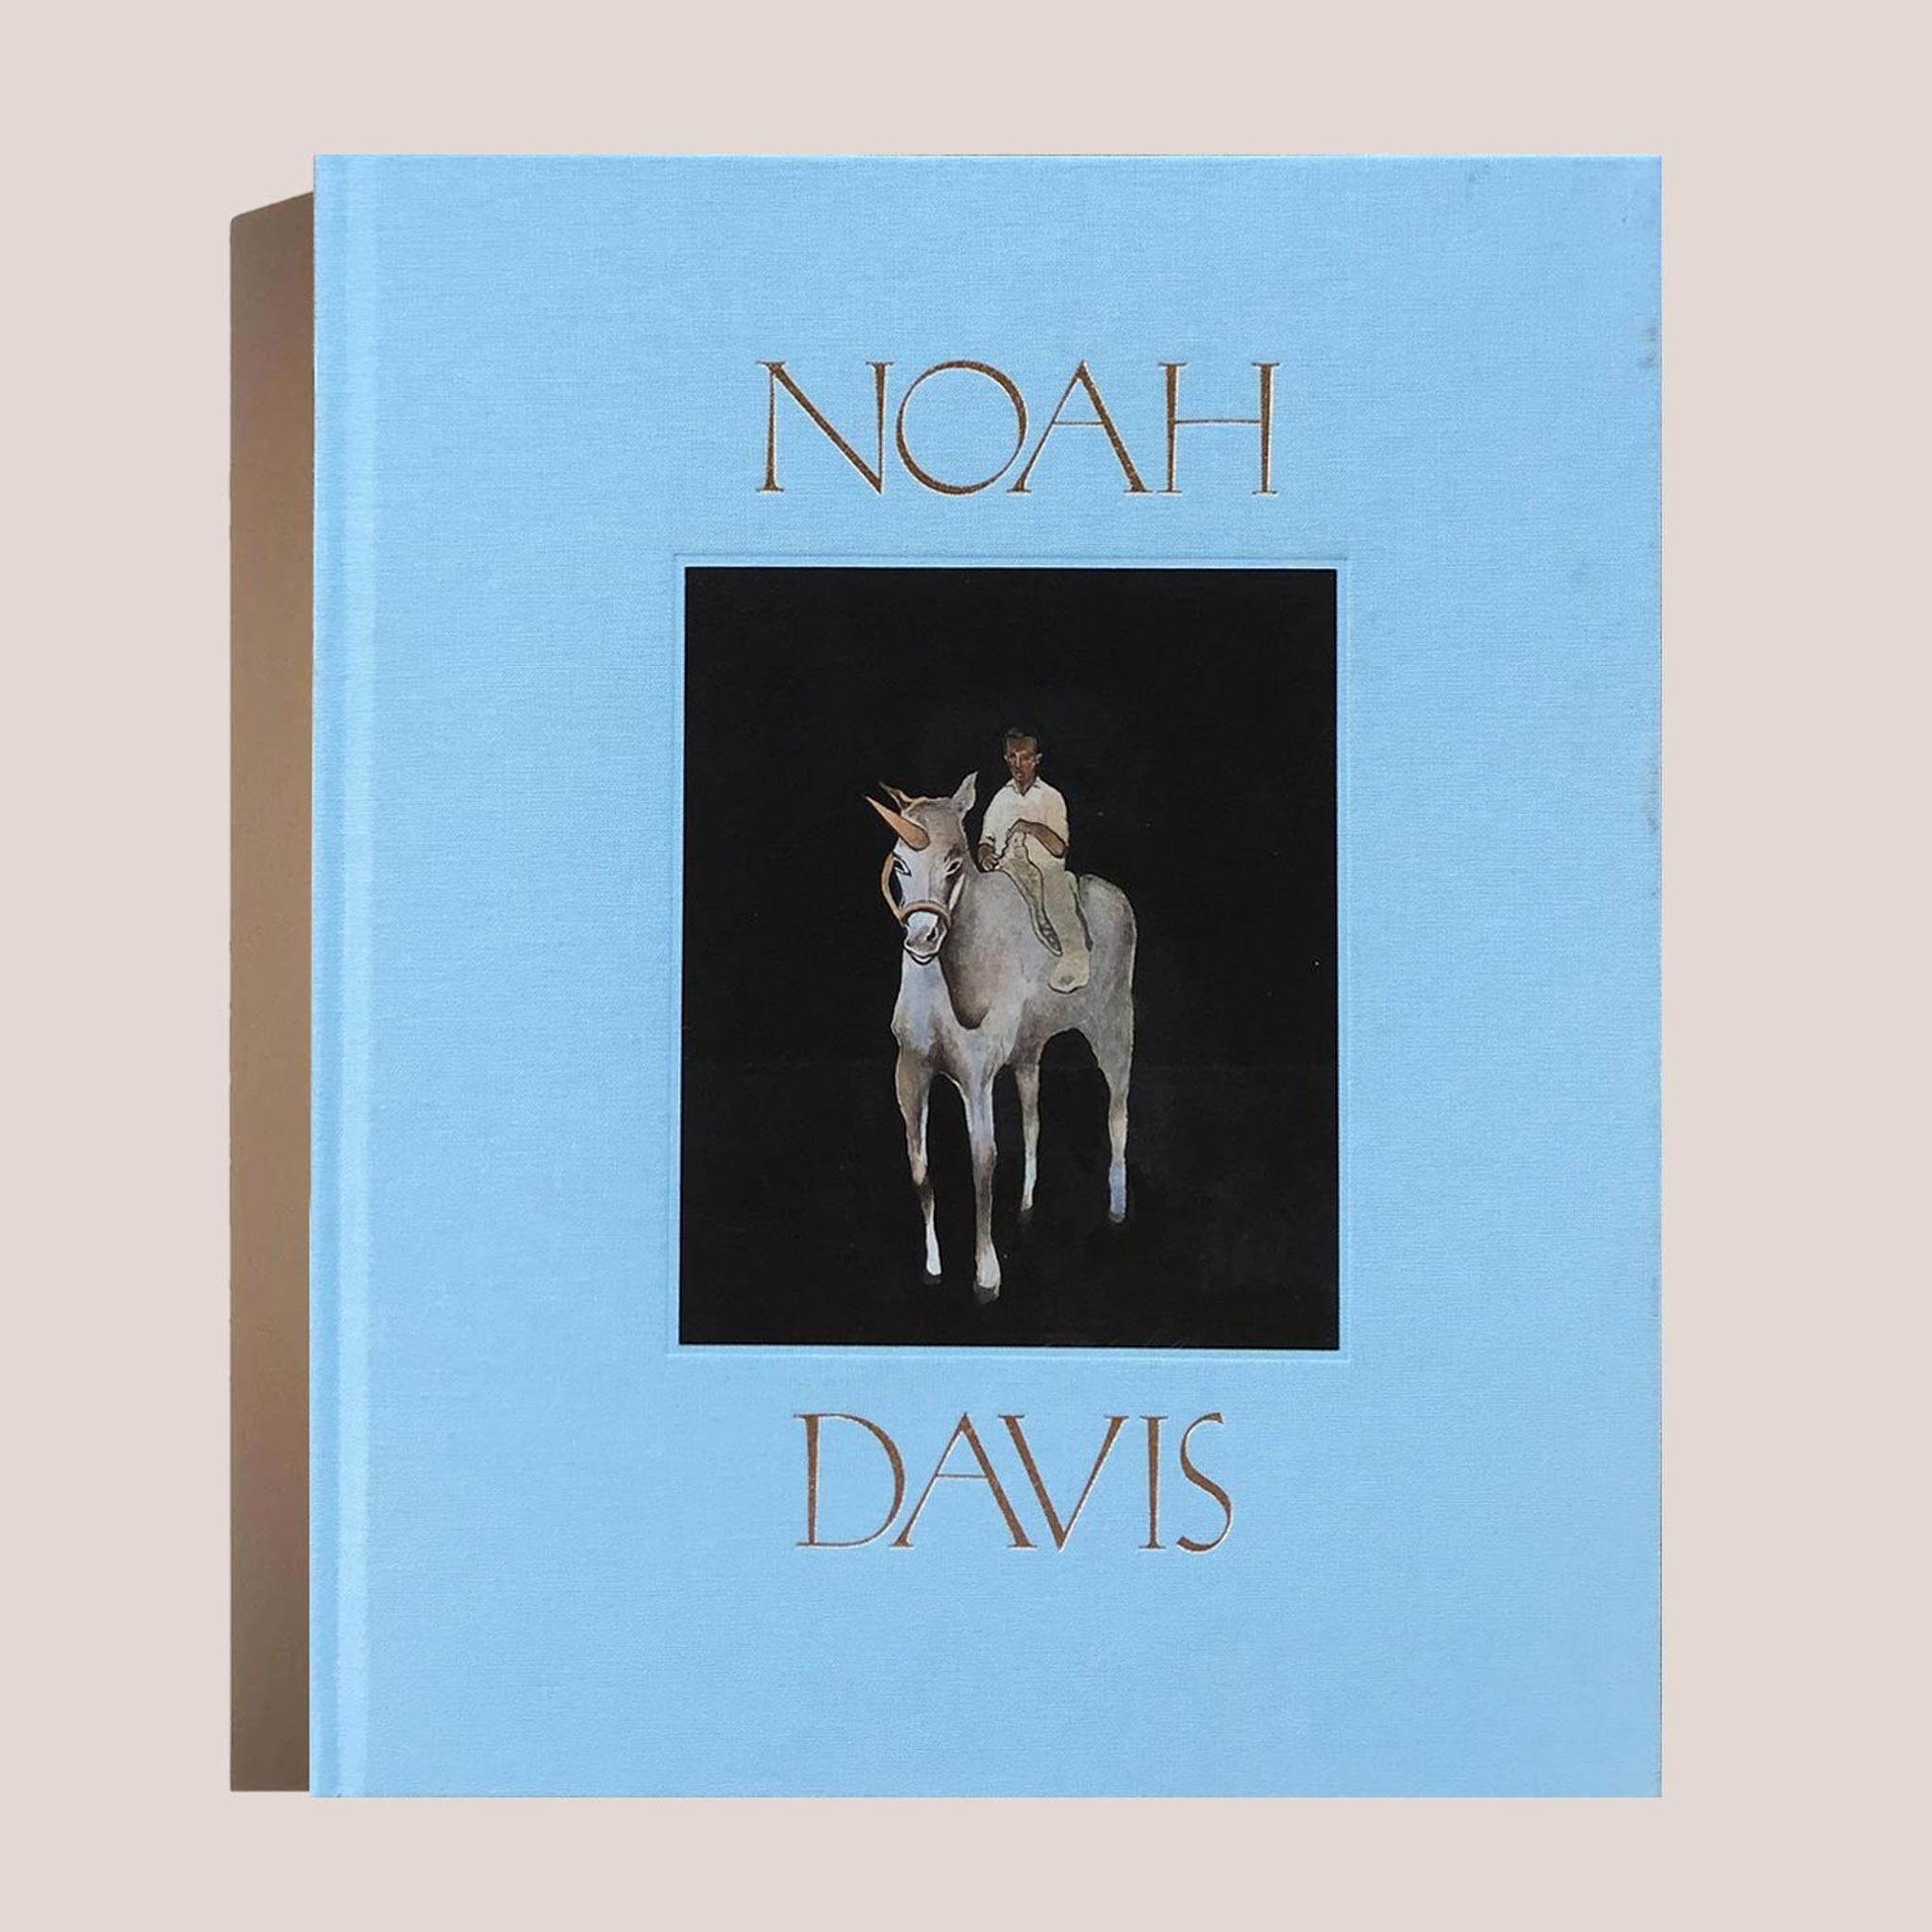 Noah Davis, book cover.